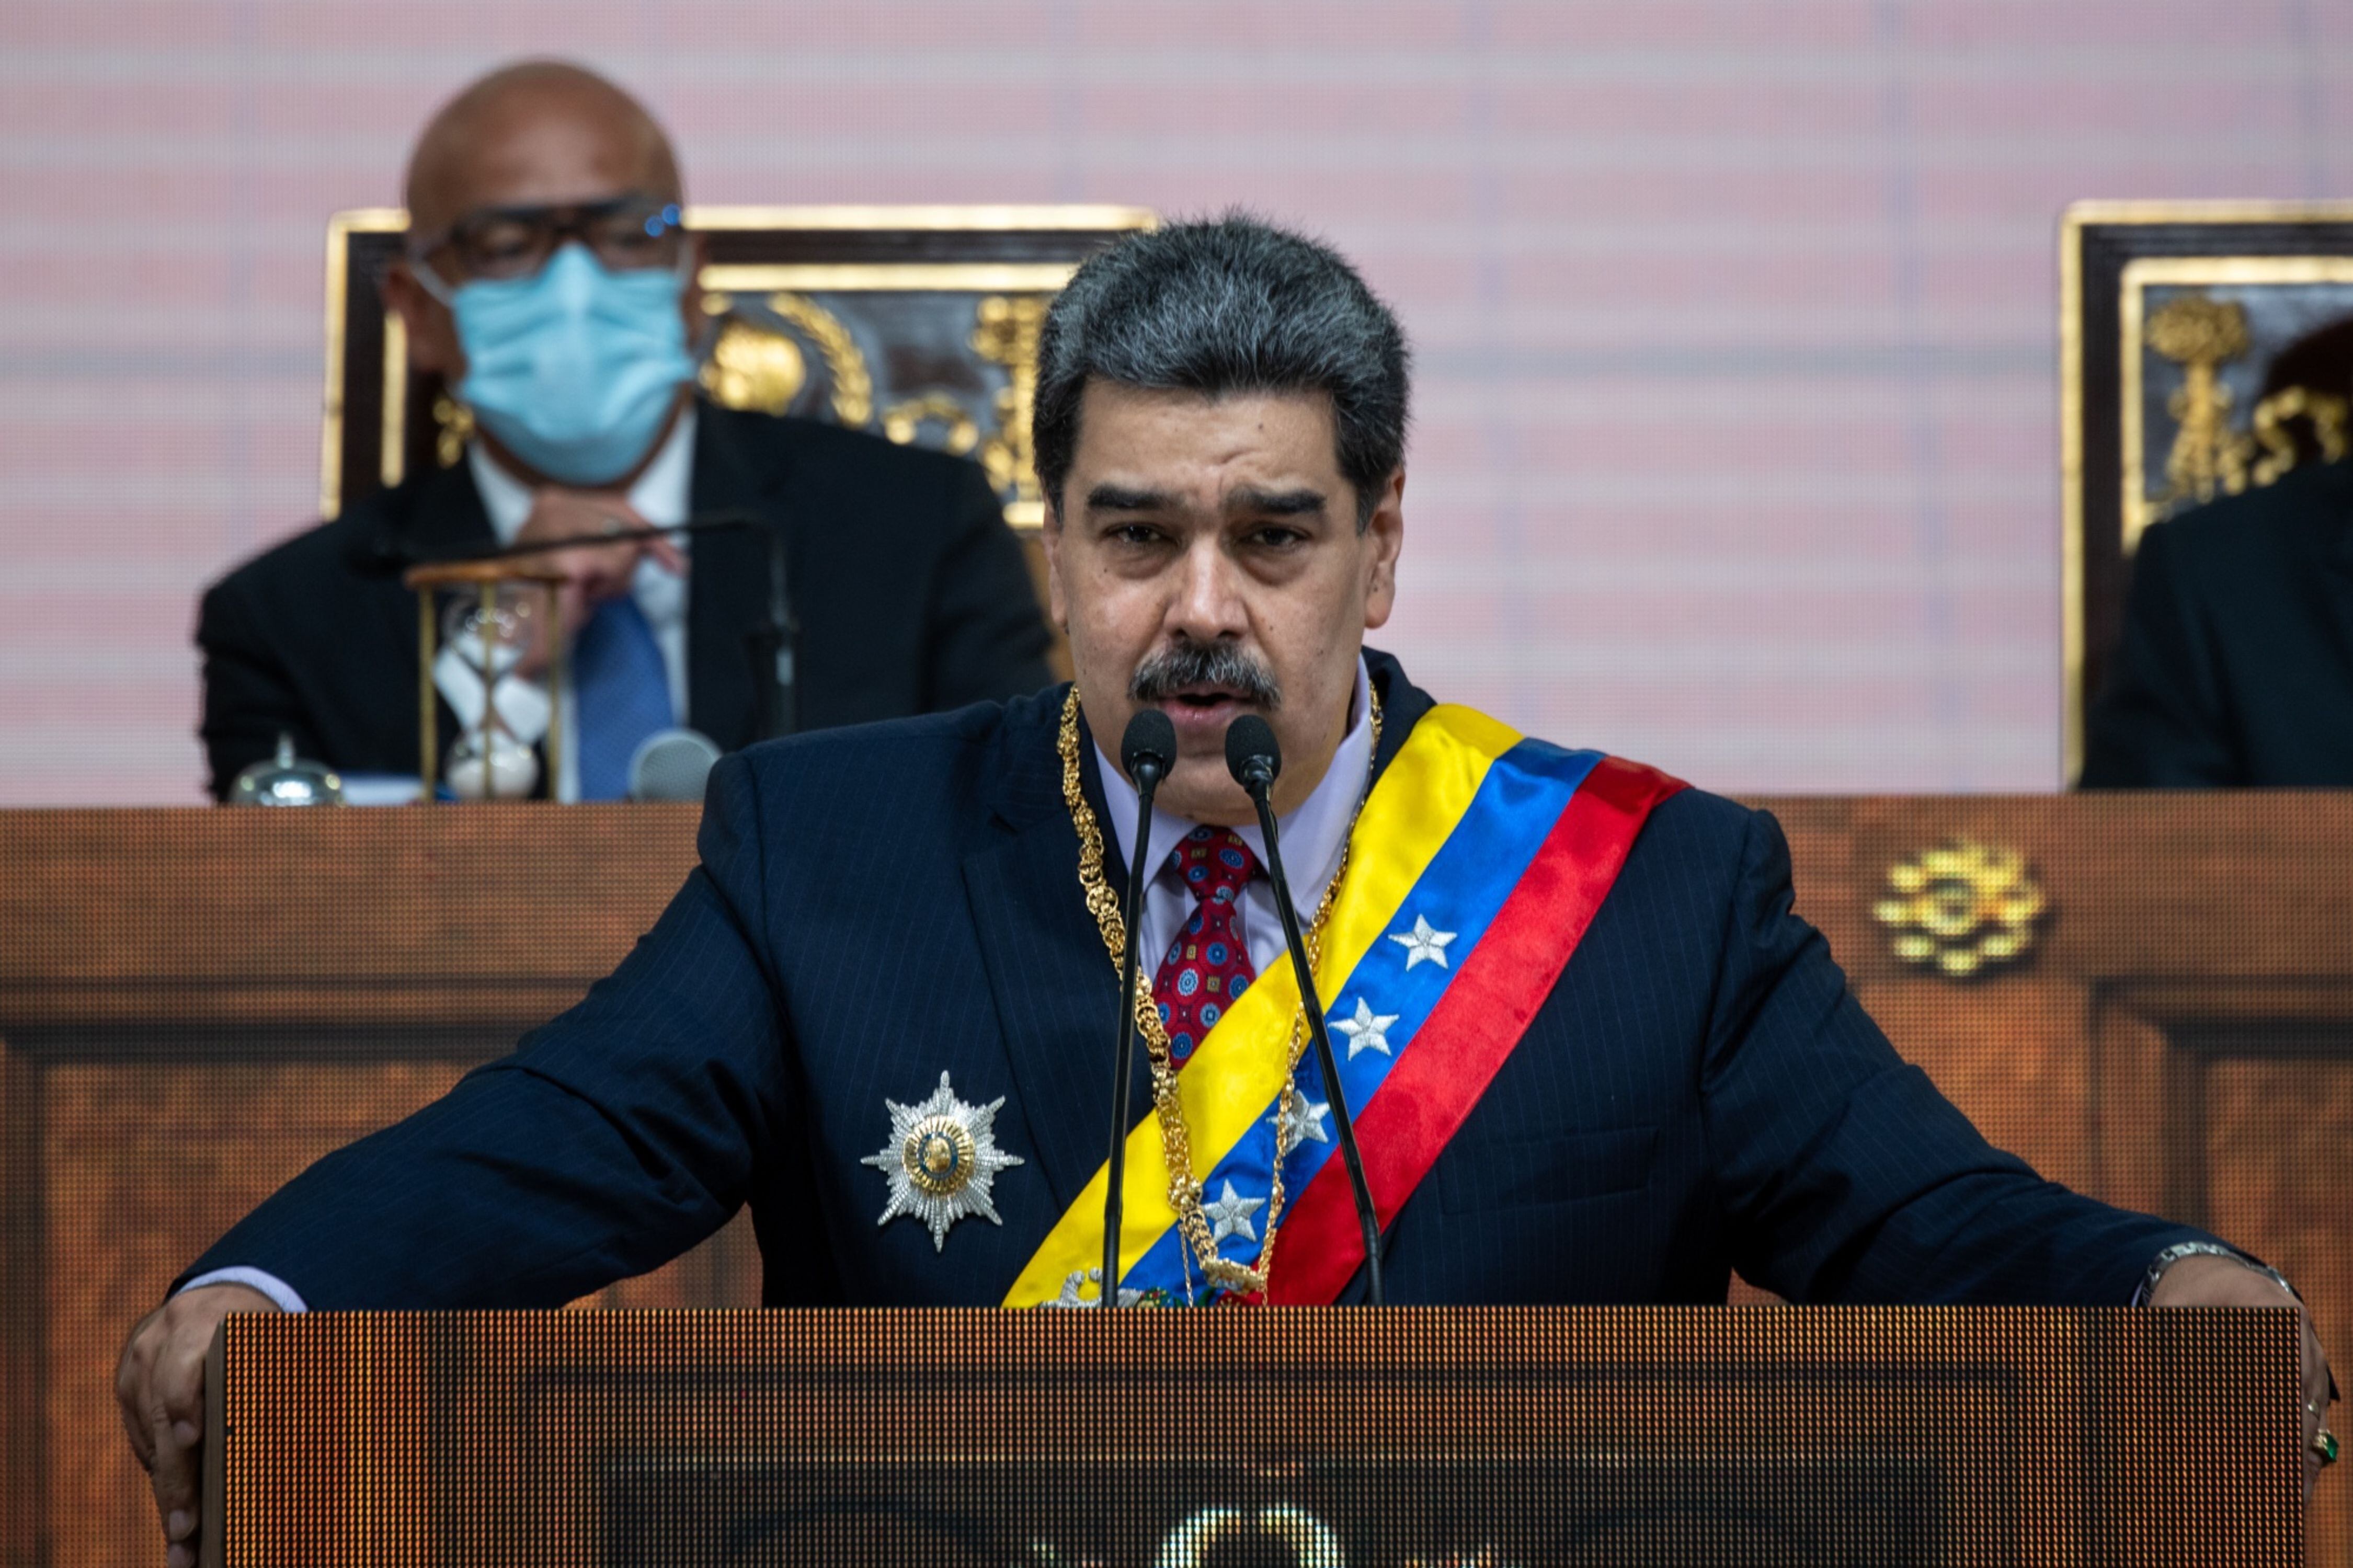 Muy agradecido: Maduro destaca llamado de Macron a levantar ‘veto’ a petróleo venezolano